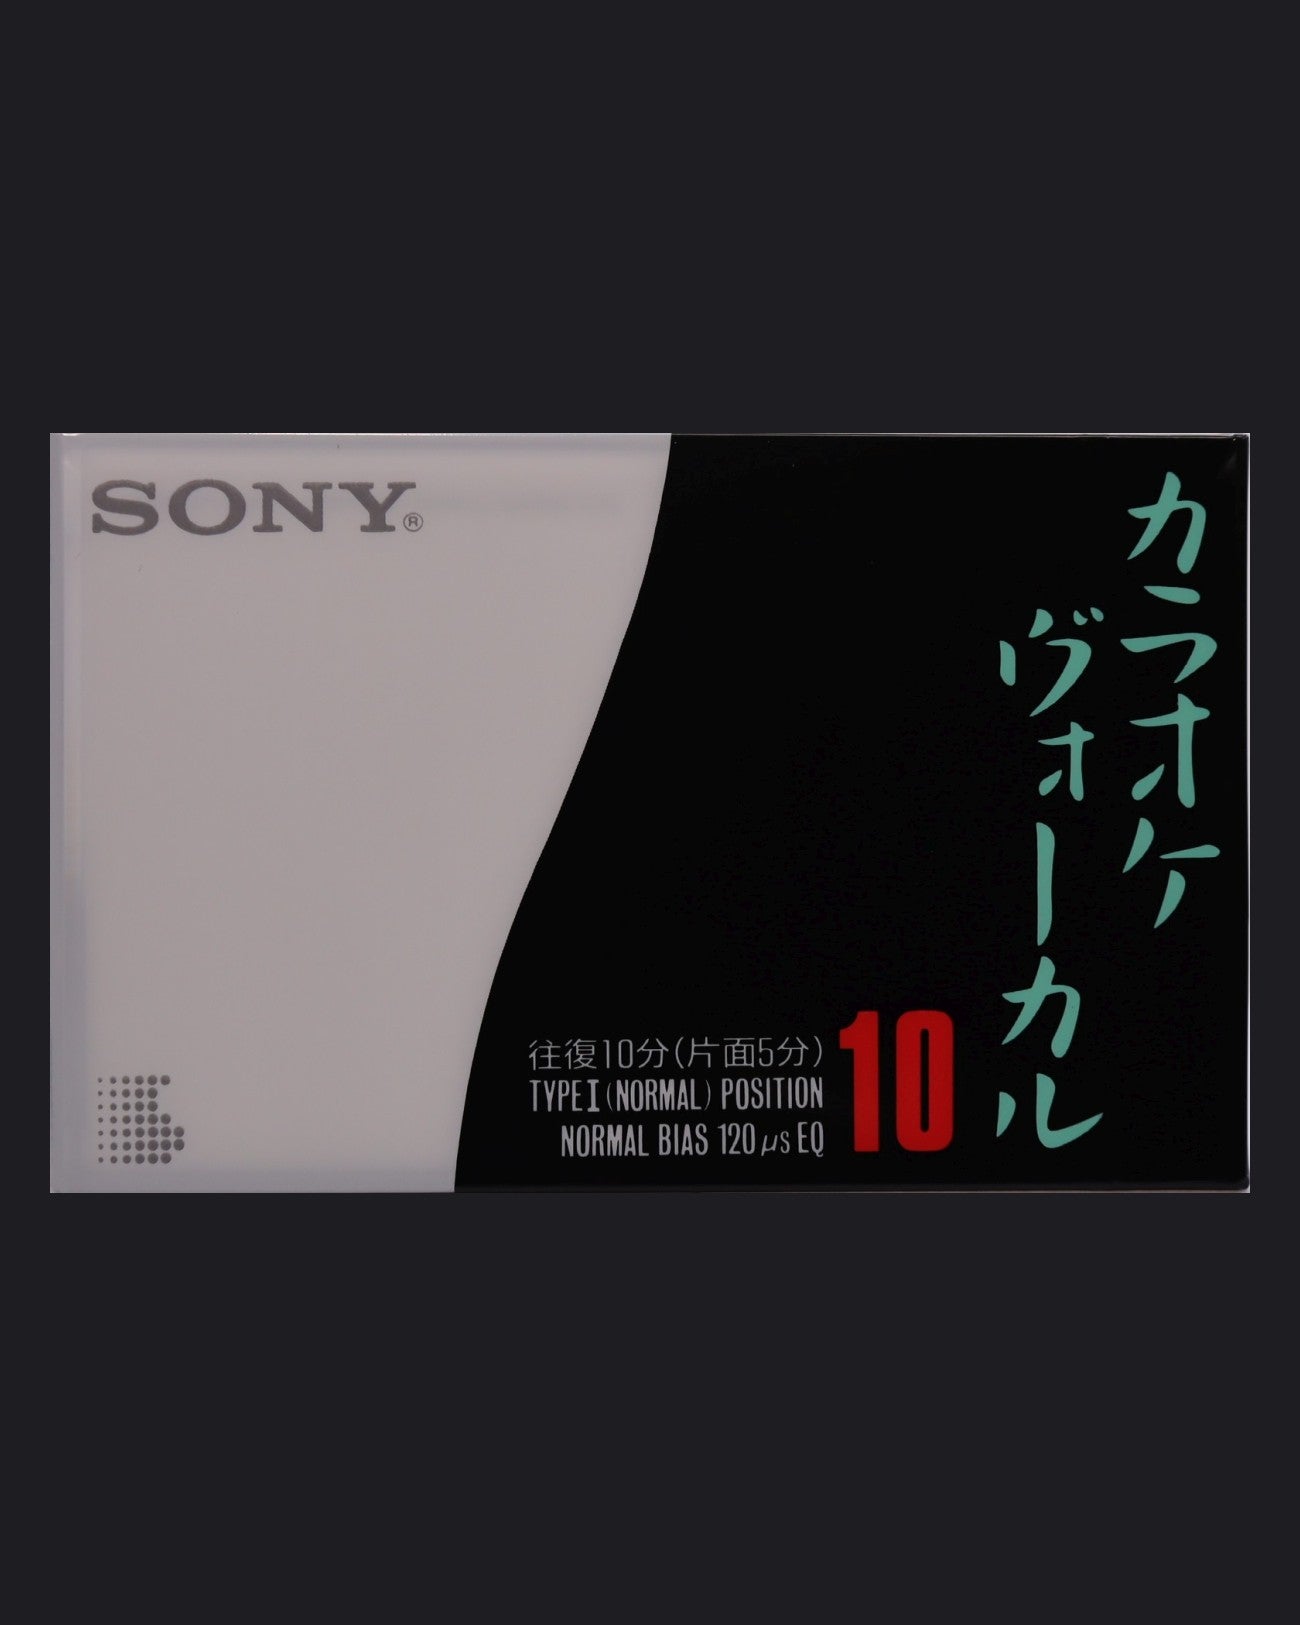 Sony KO (JP)